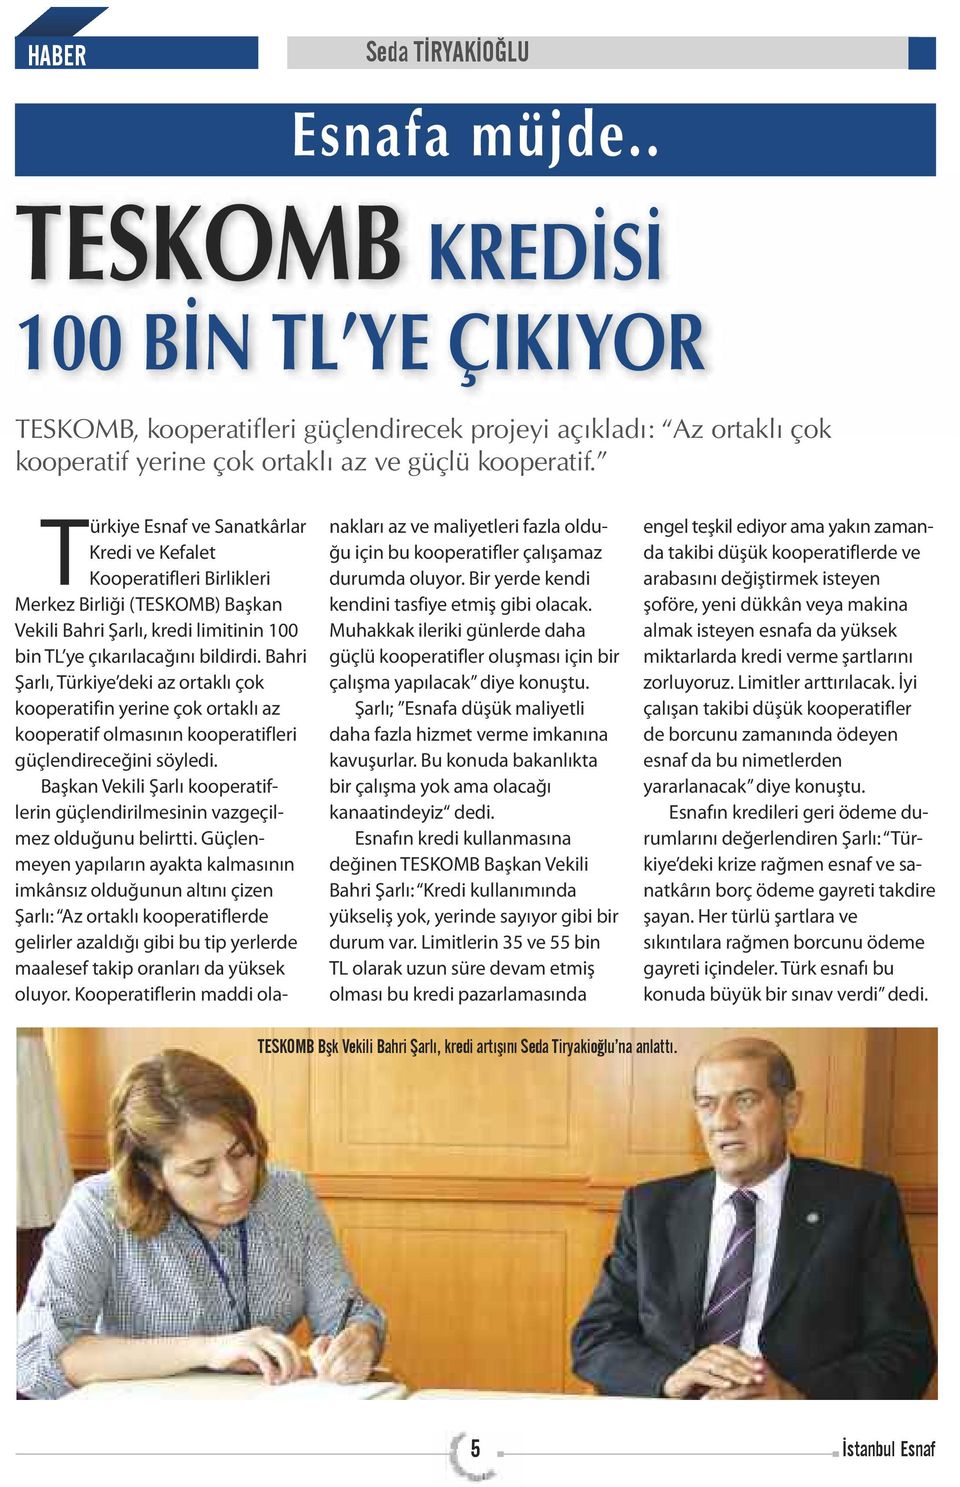 Bahri Şarlı, Türkiye deki az ortaklı çok kooperatifin yerine çok ortaklı az kooperatif olmasının kooperatifleri güçlendireceğini söyledi.